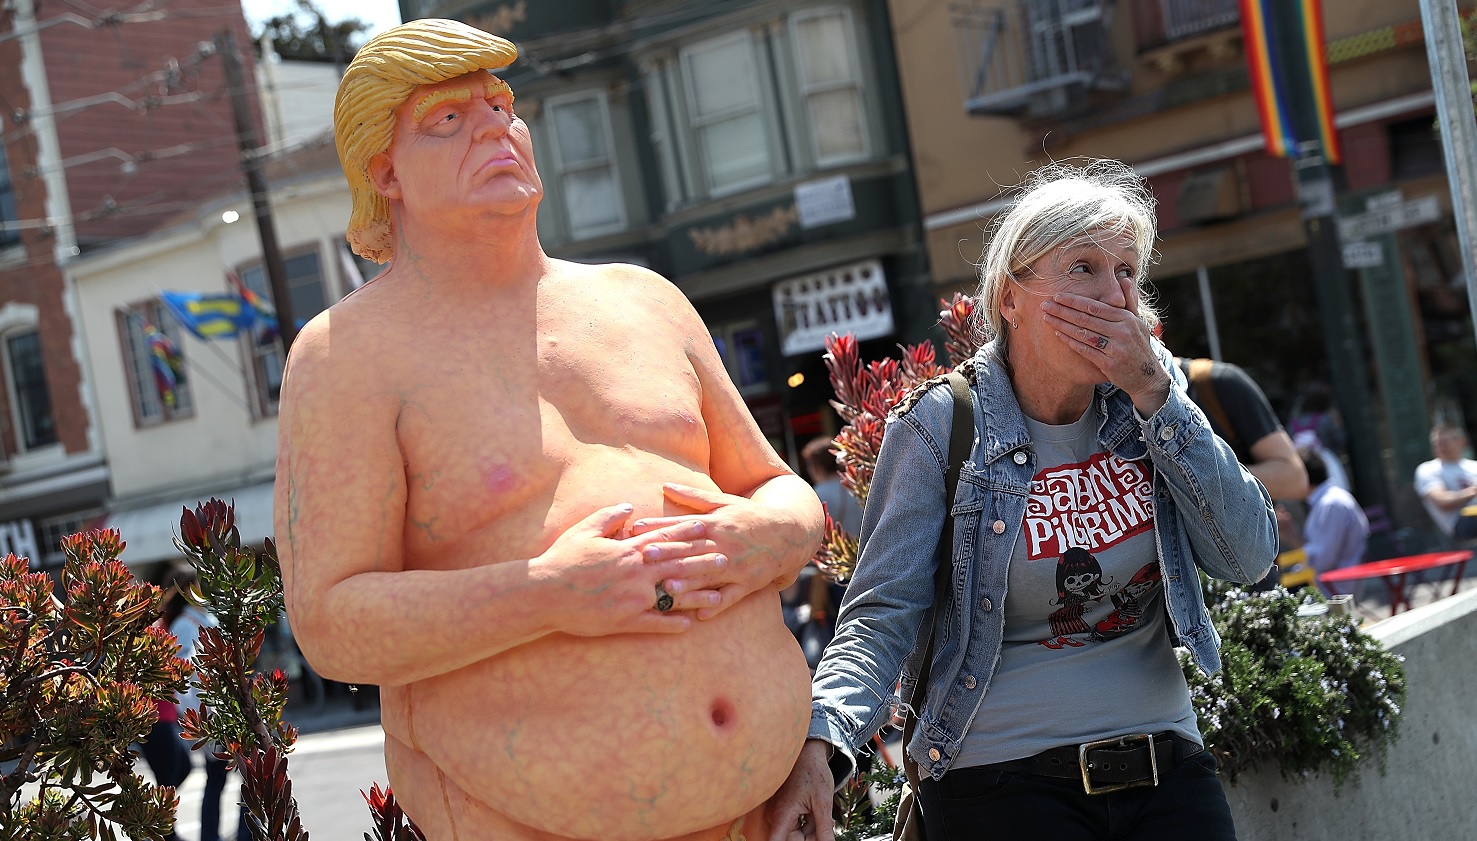 Estatua de Donald Trump desnudo será subastada en Nueva Jersey